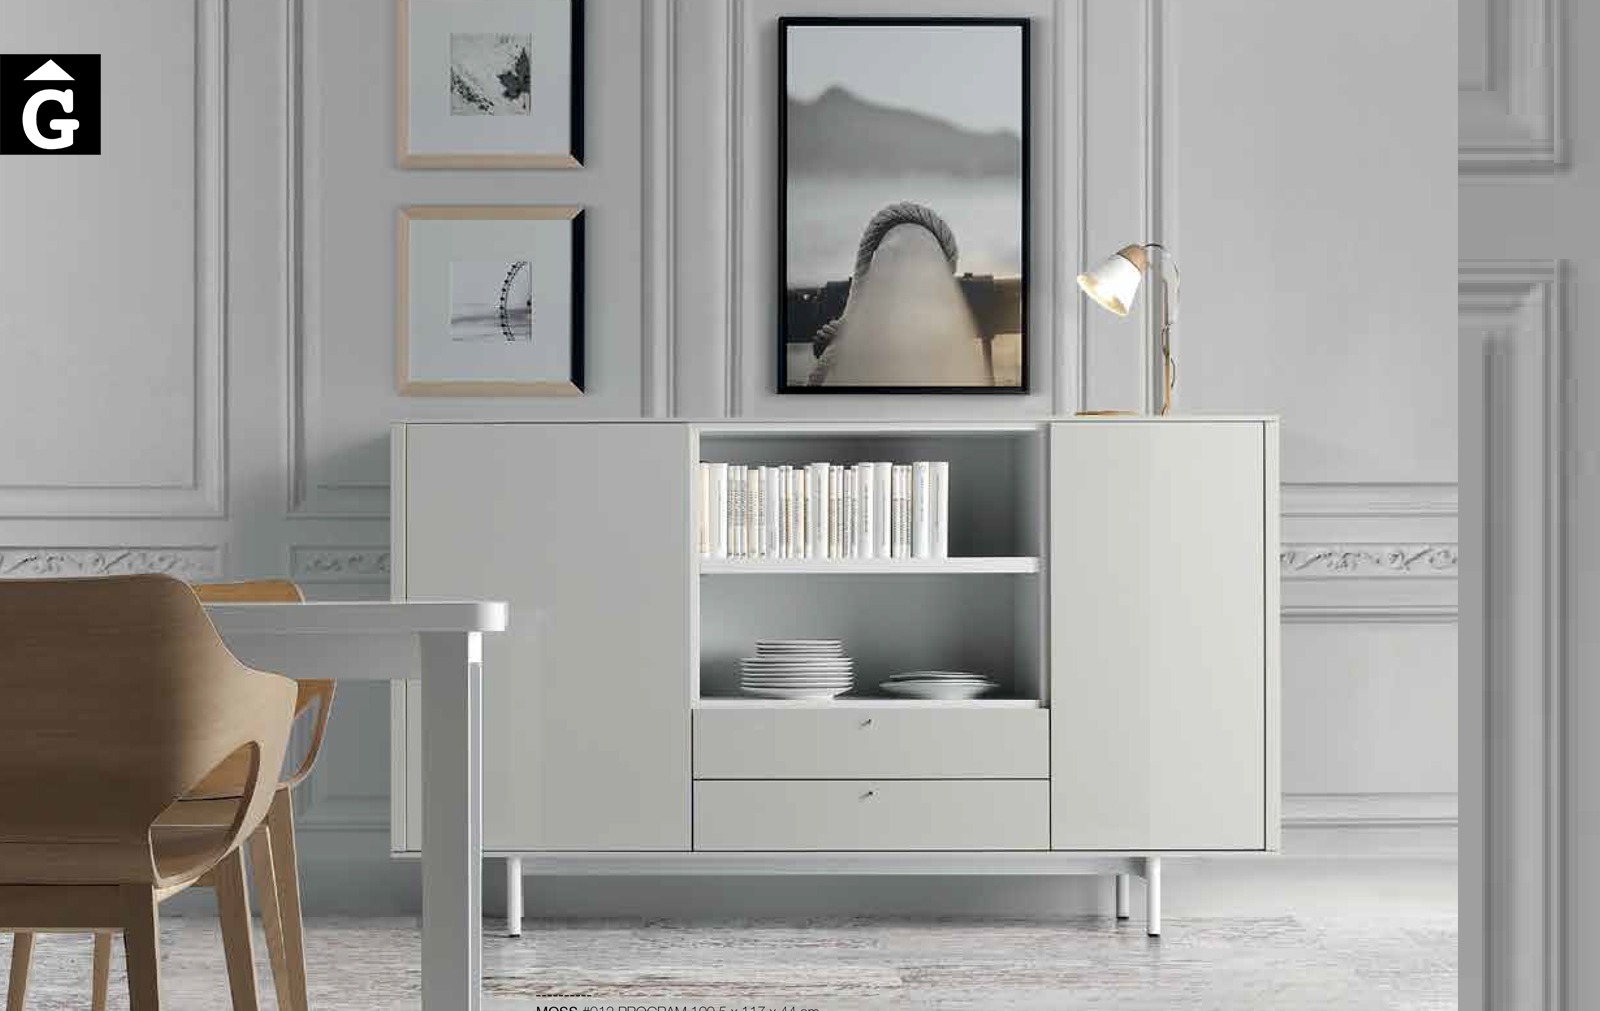 Bufet blanc Loyra muebles by mobles Gifreu Idees per la llar moble de qualitat